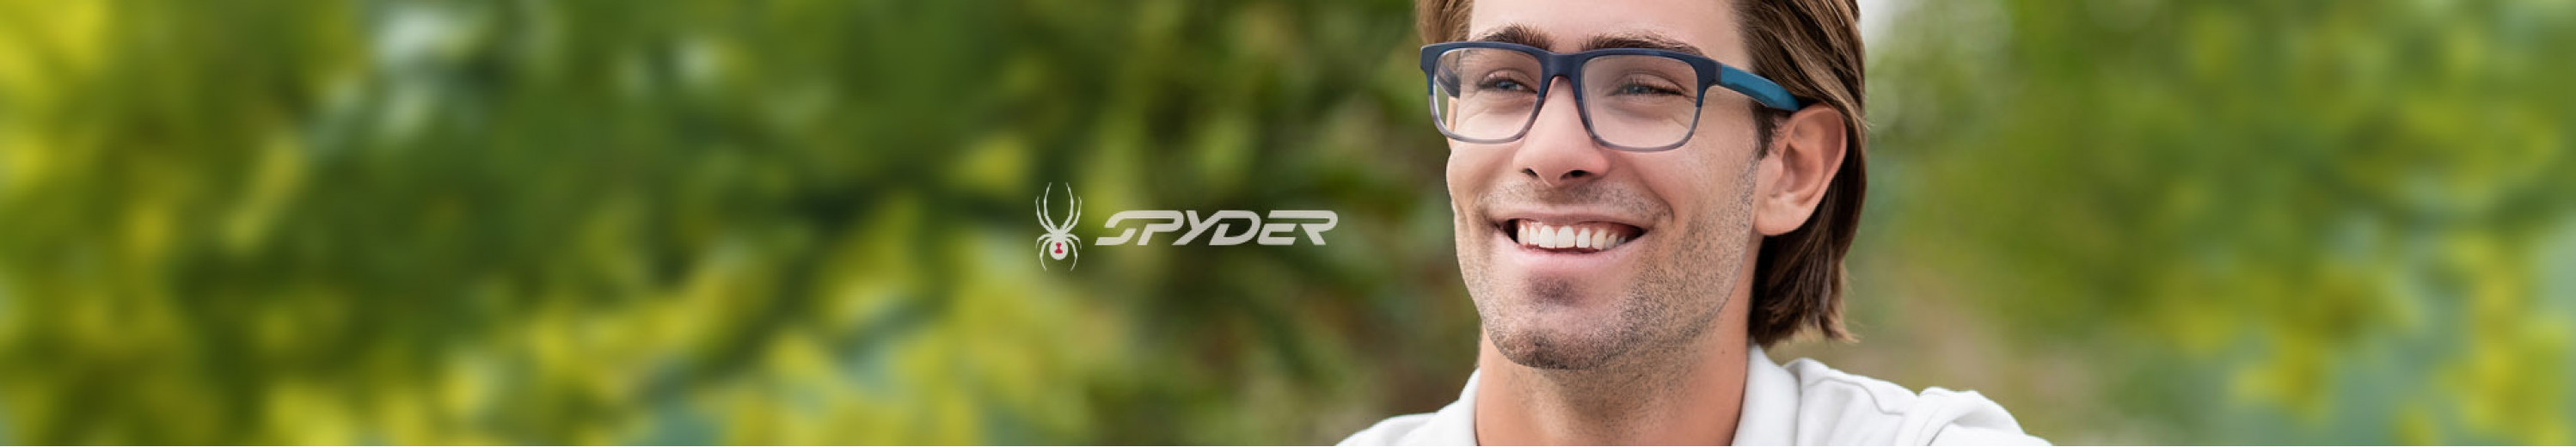 Spyder Eyeglasses